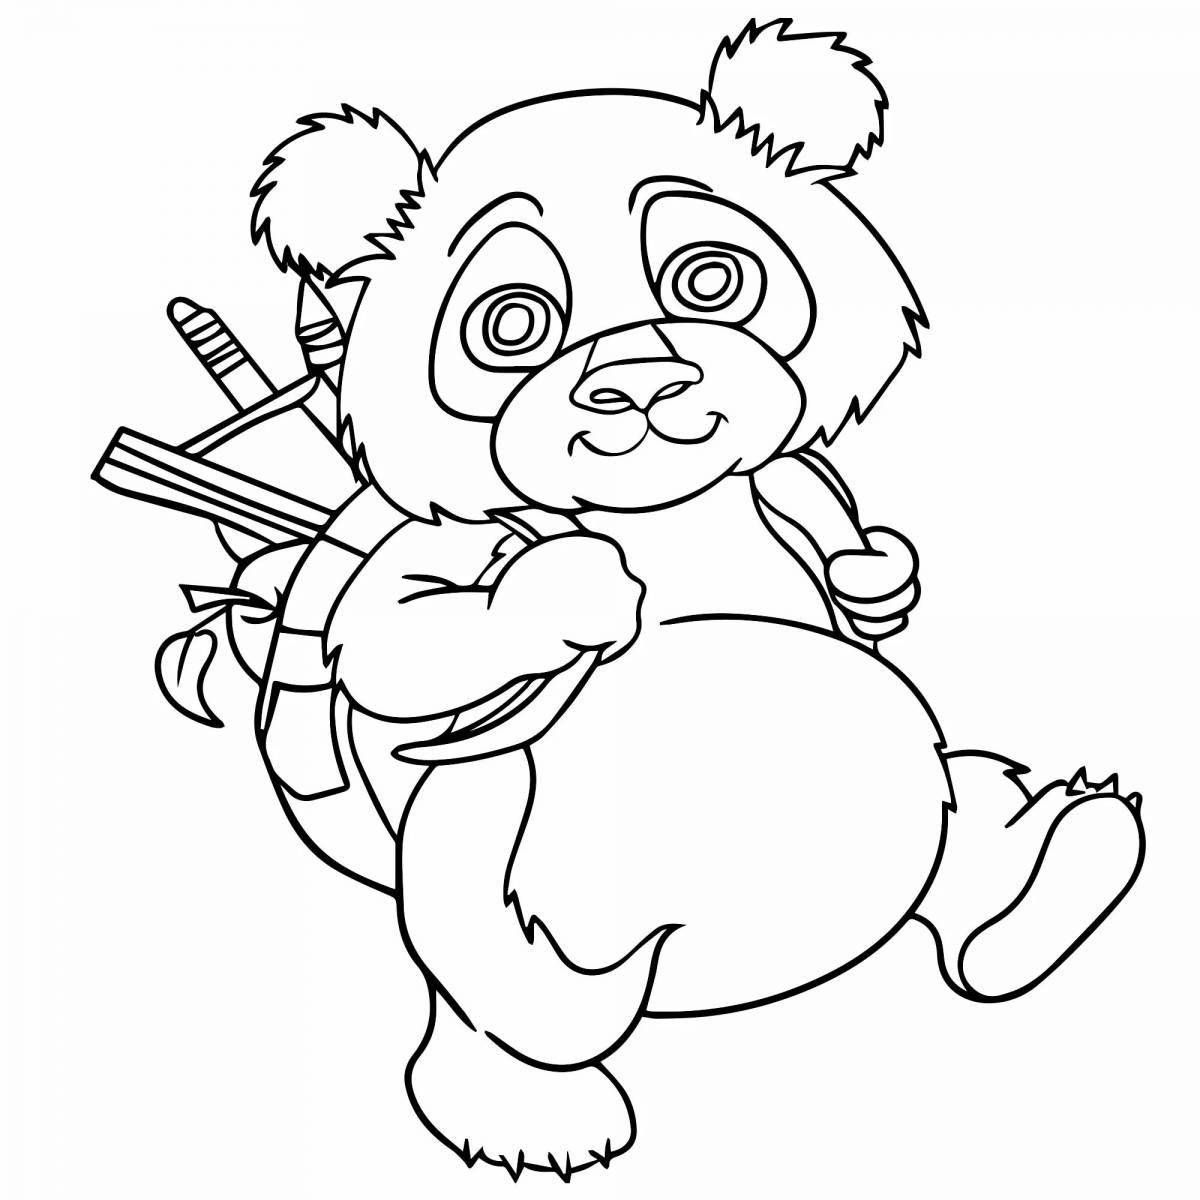 Playable panda coloring book for kids